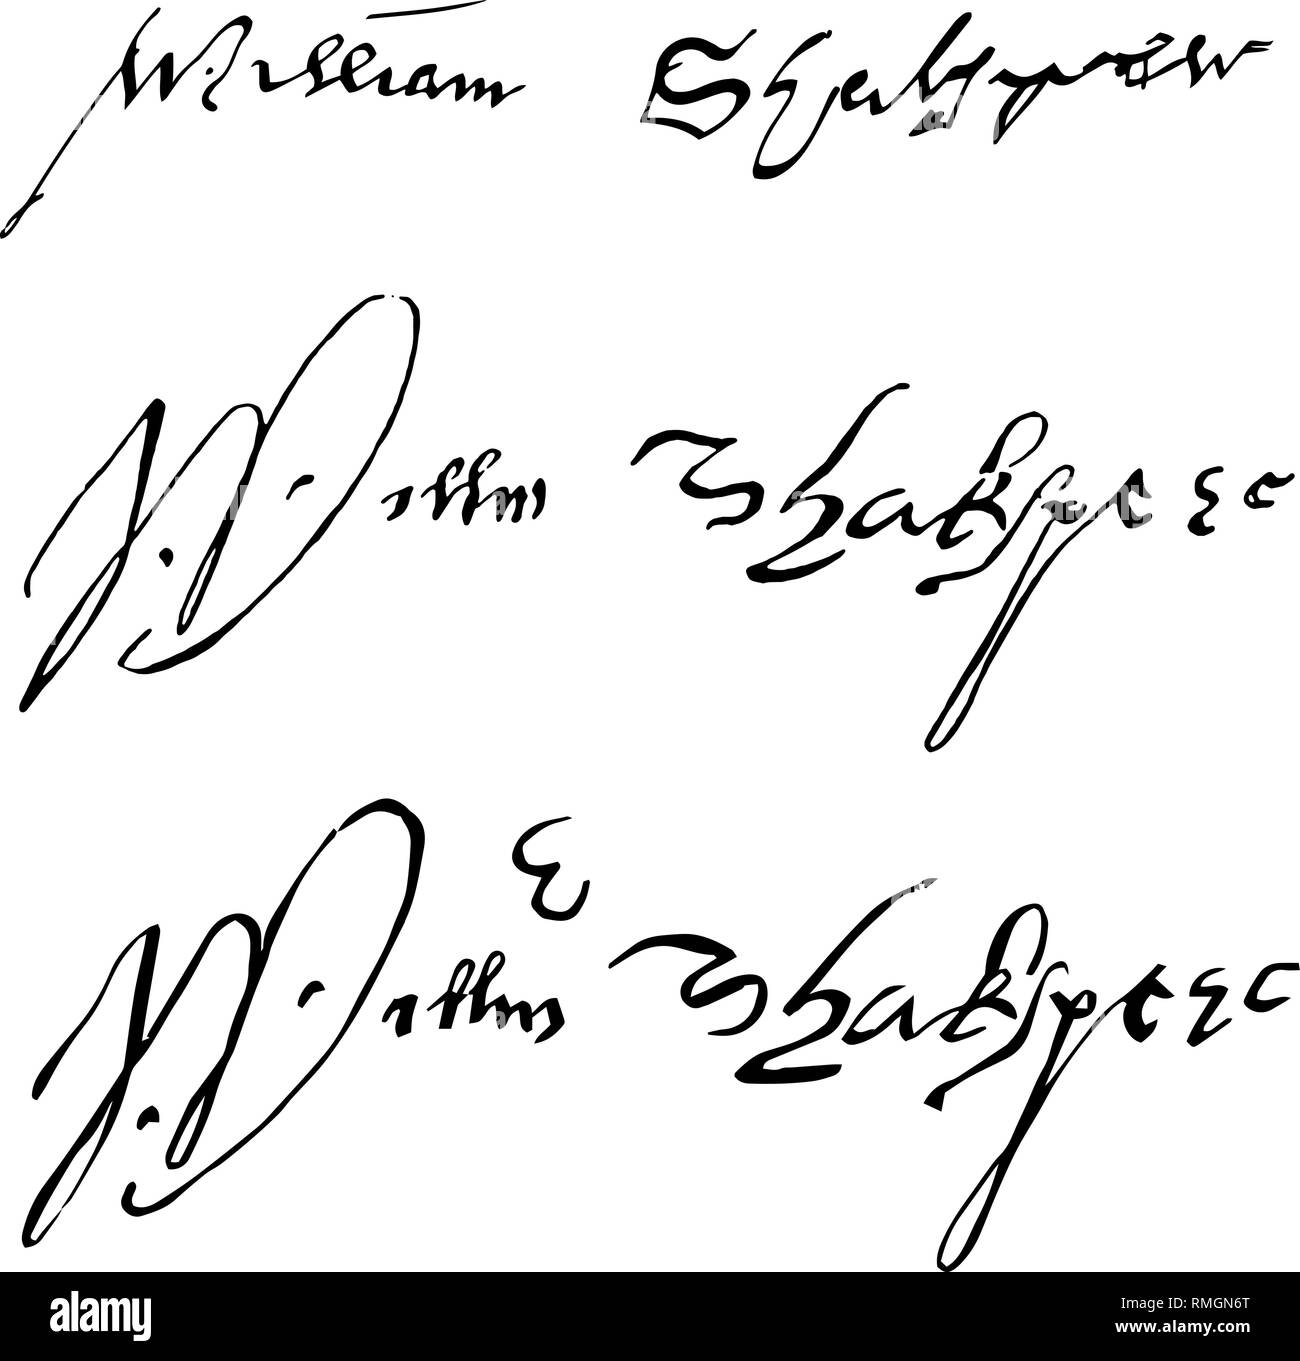 3 original signatures of William Shakespeare. Stock Vector